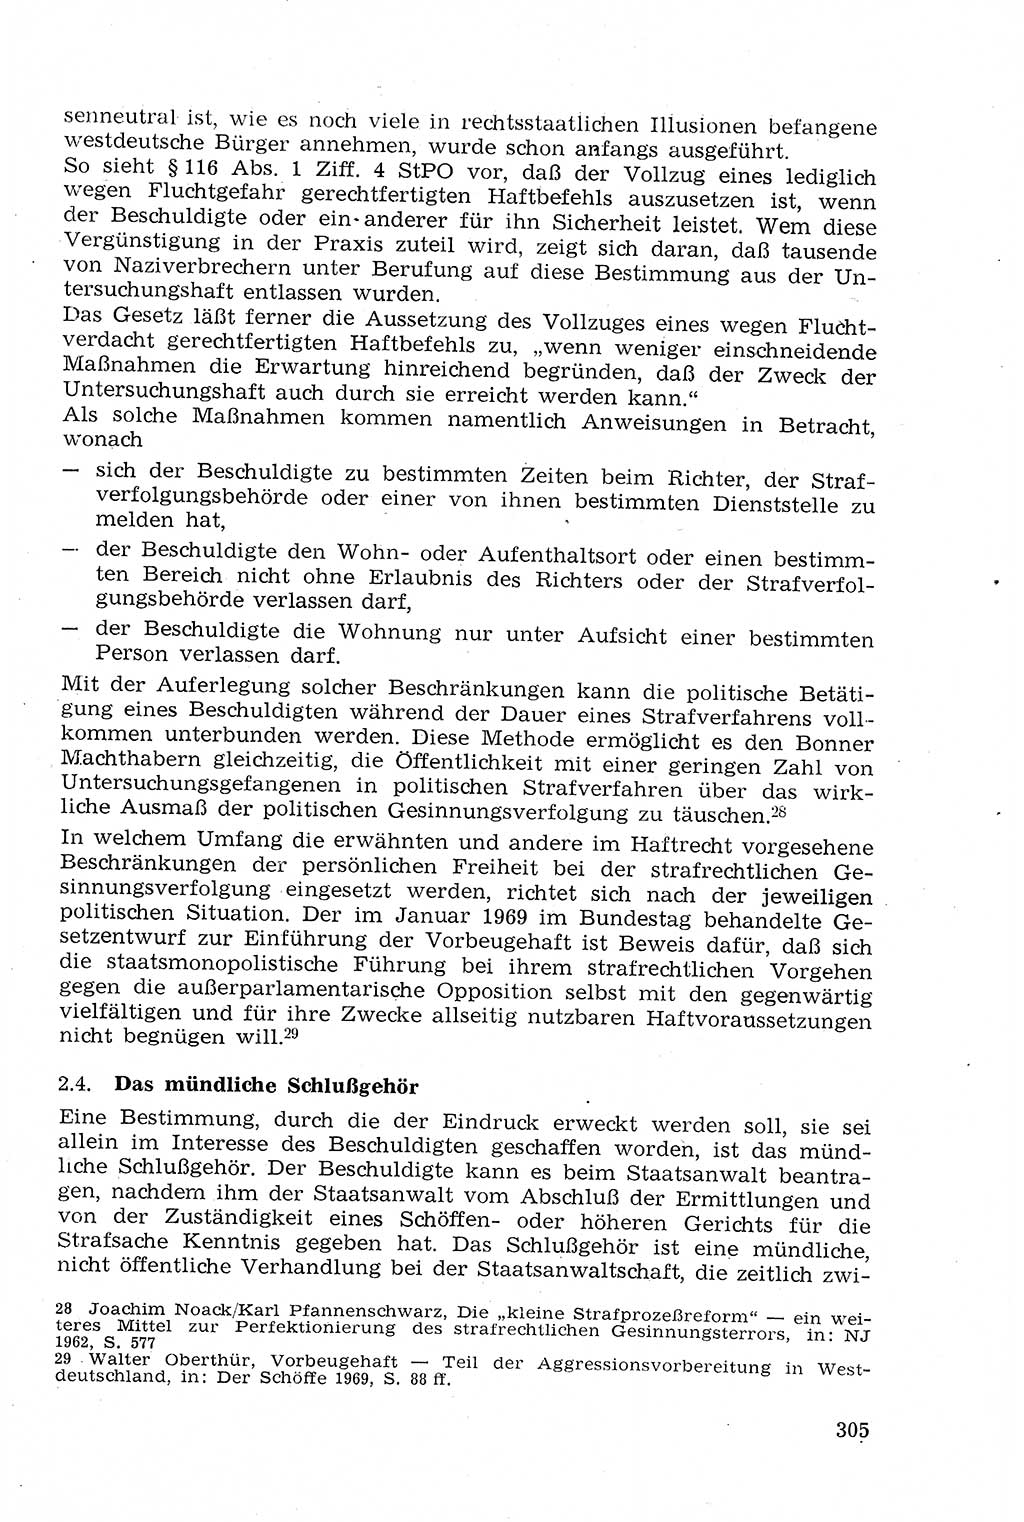 Strafprozeßrecht der DDR (Deutsche Demokratische Republik), Lehrmaterial 1969, Seite 305 (Strafprozeßr. DDR Lehrmat. 1969, S. 305)